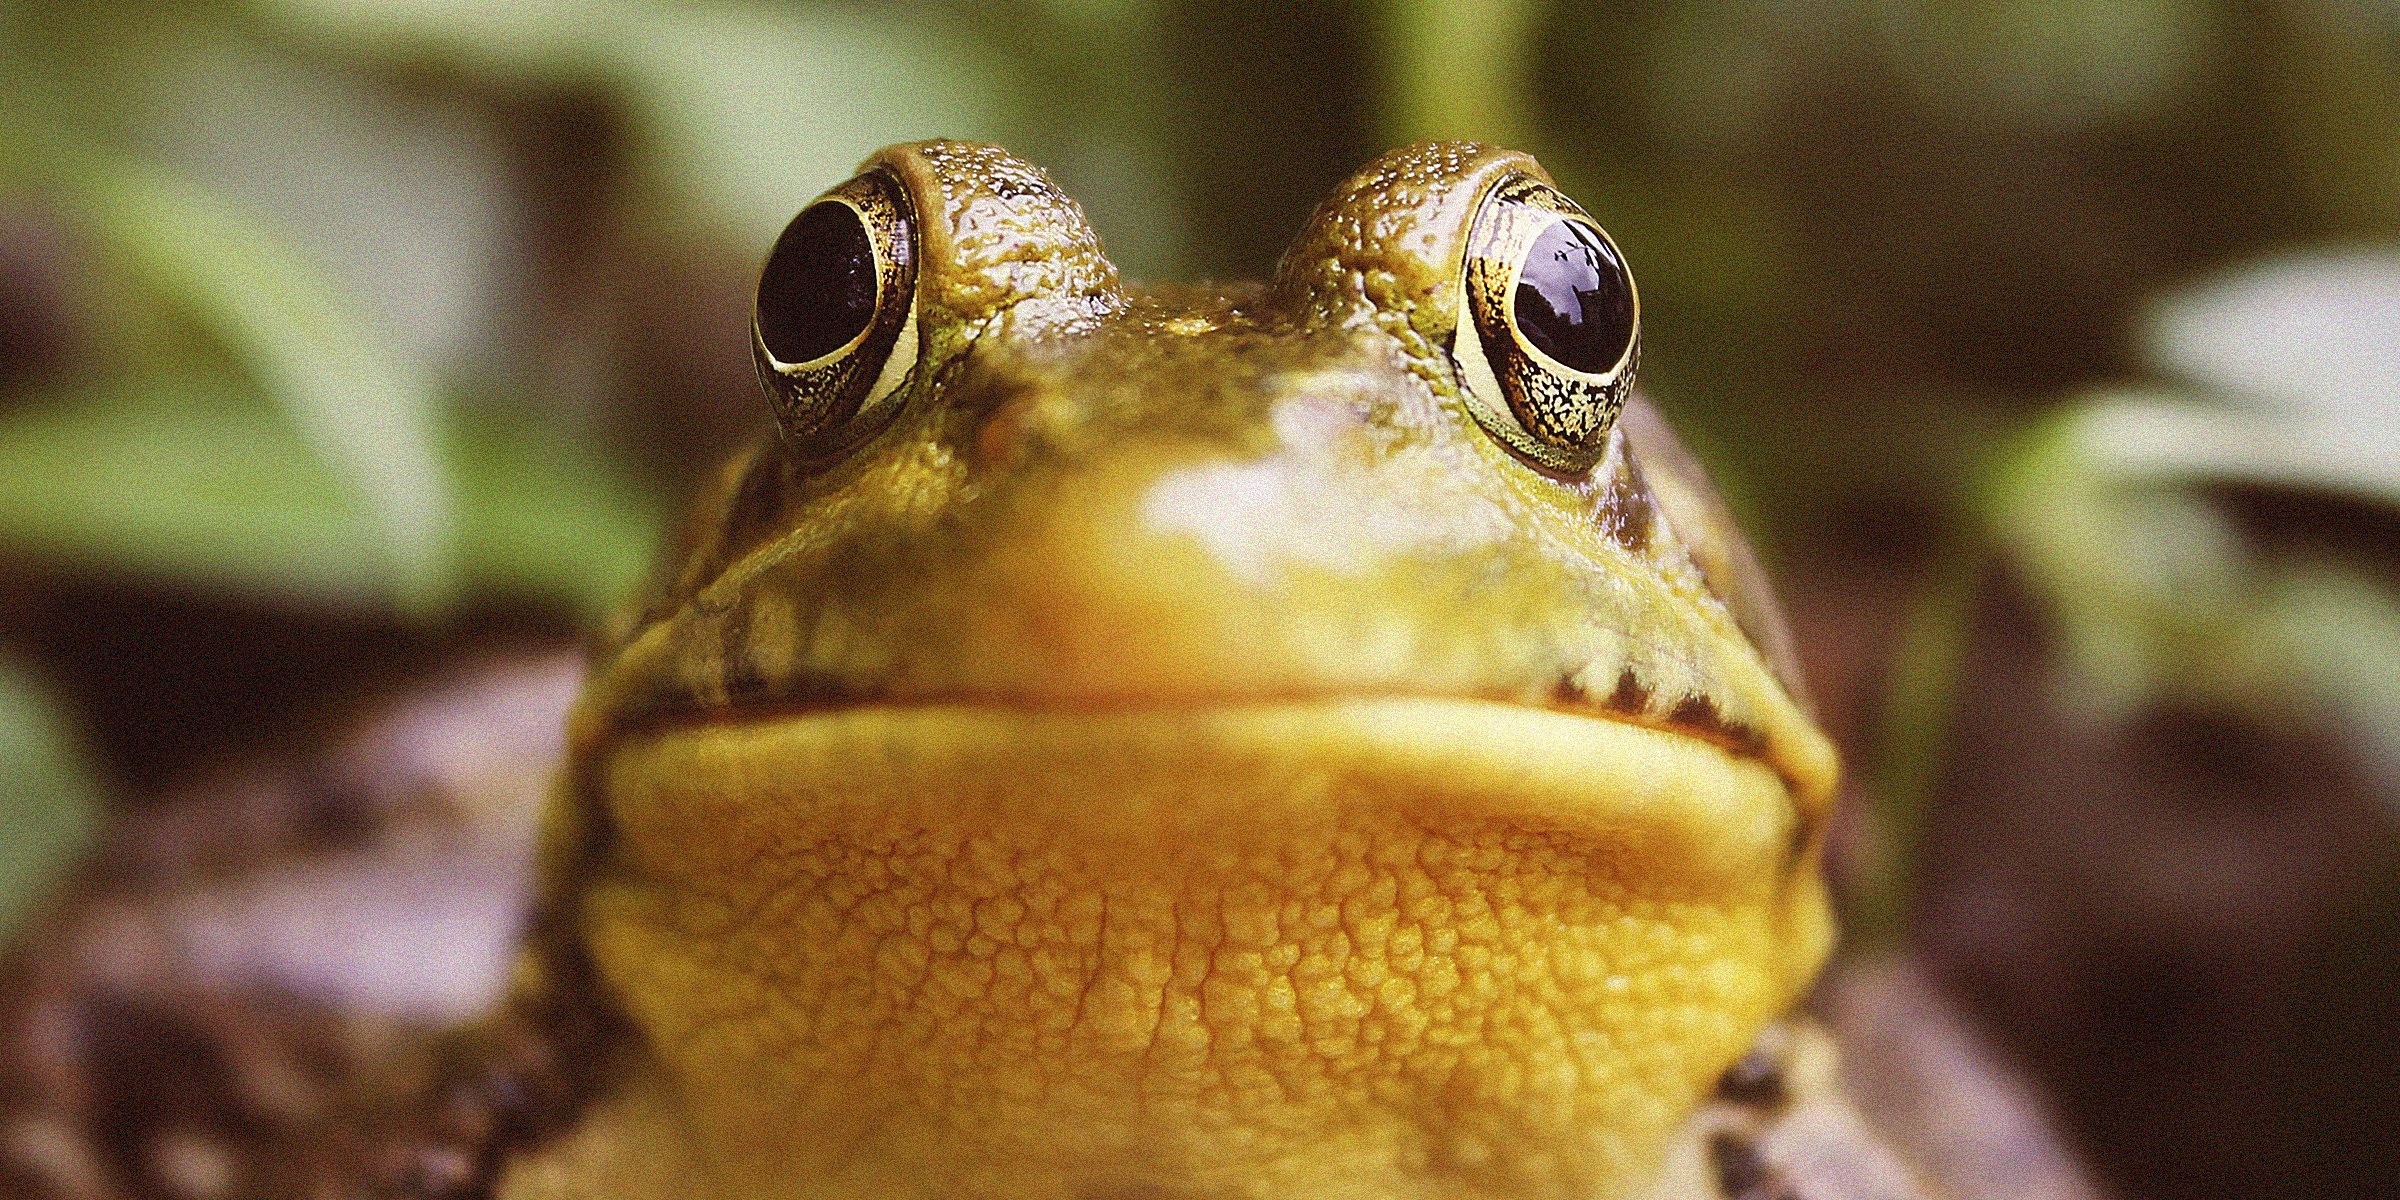 A frog | Source: Unsplash 